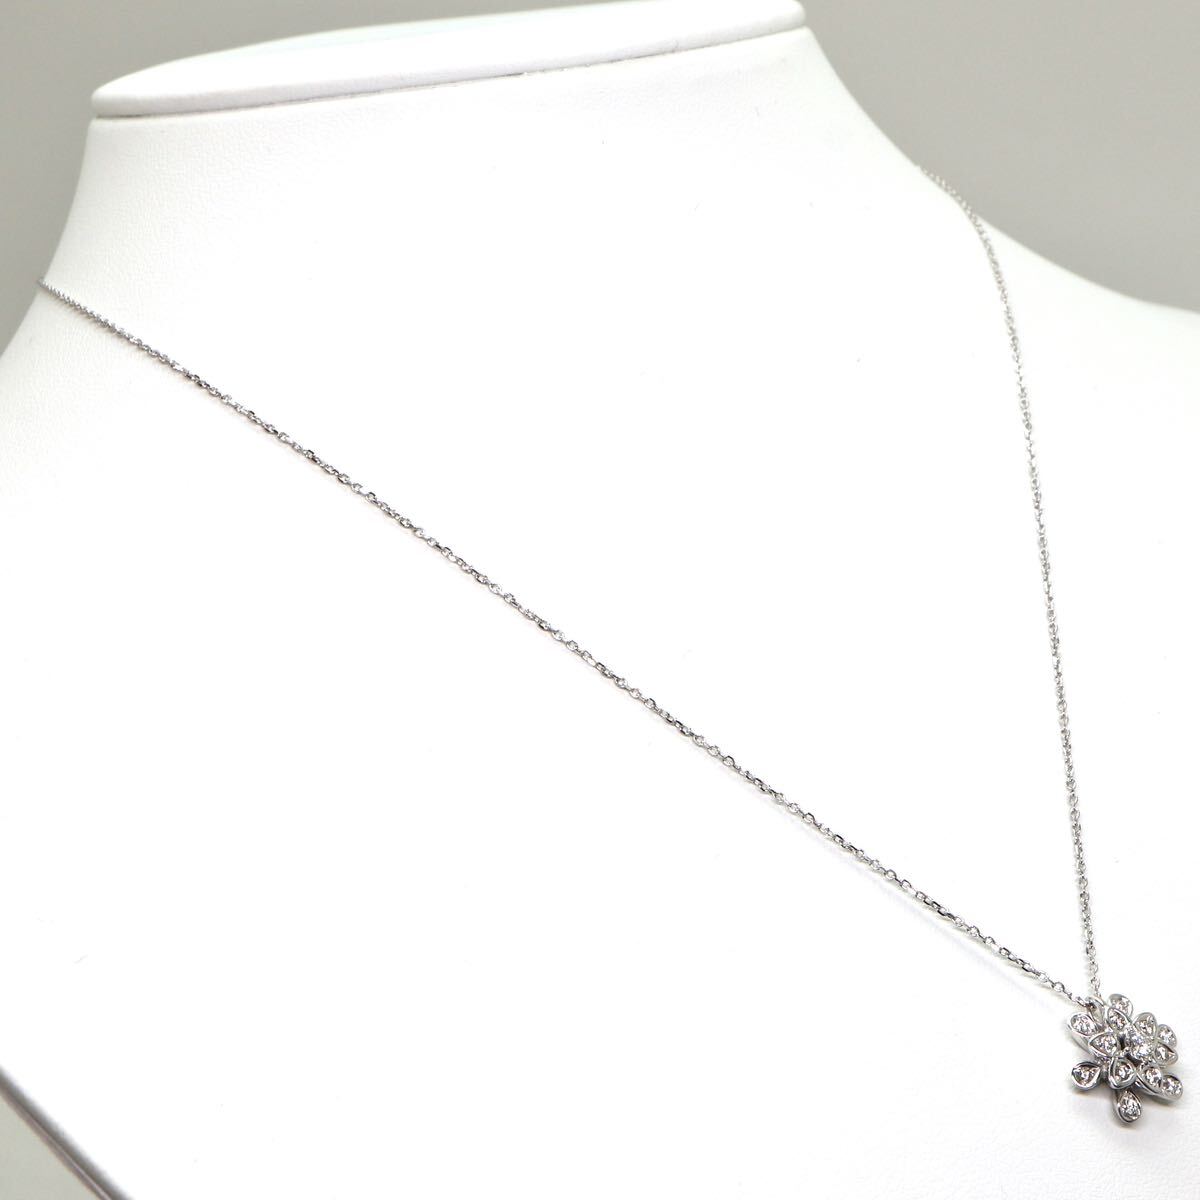 TASAKI(田崎真珠)◆K18 天然ダイヤモンドネックレス◆M 約4.7g 約45.0cm 0.19ct diamond necklace jewelry ジュエリー ED8/EF0の画像3